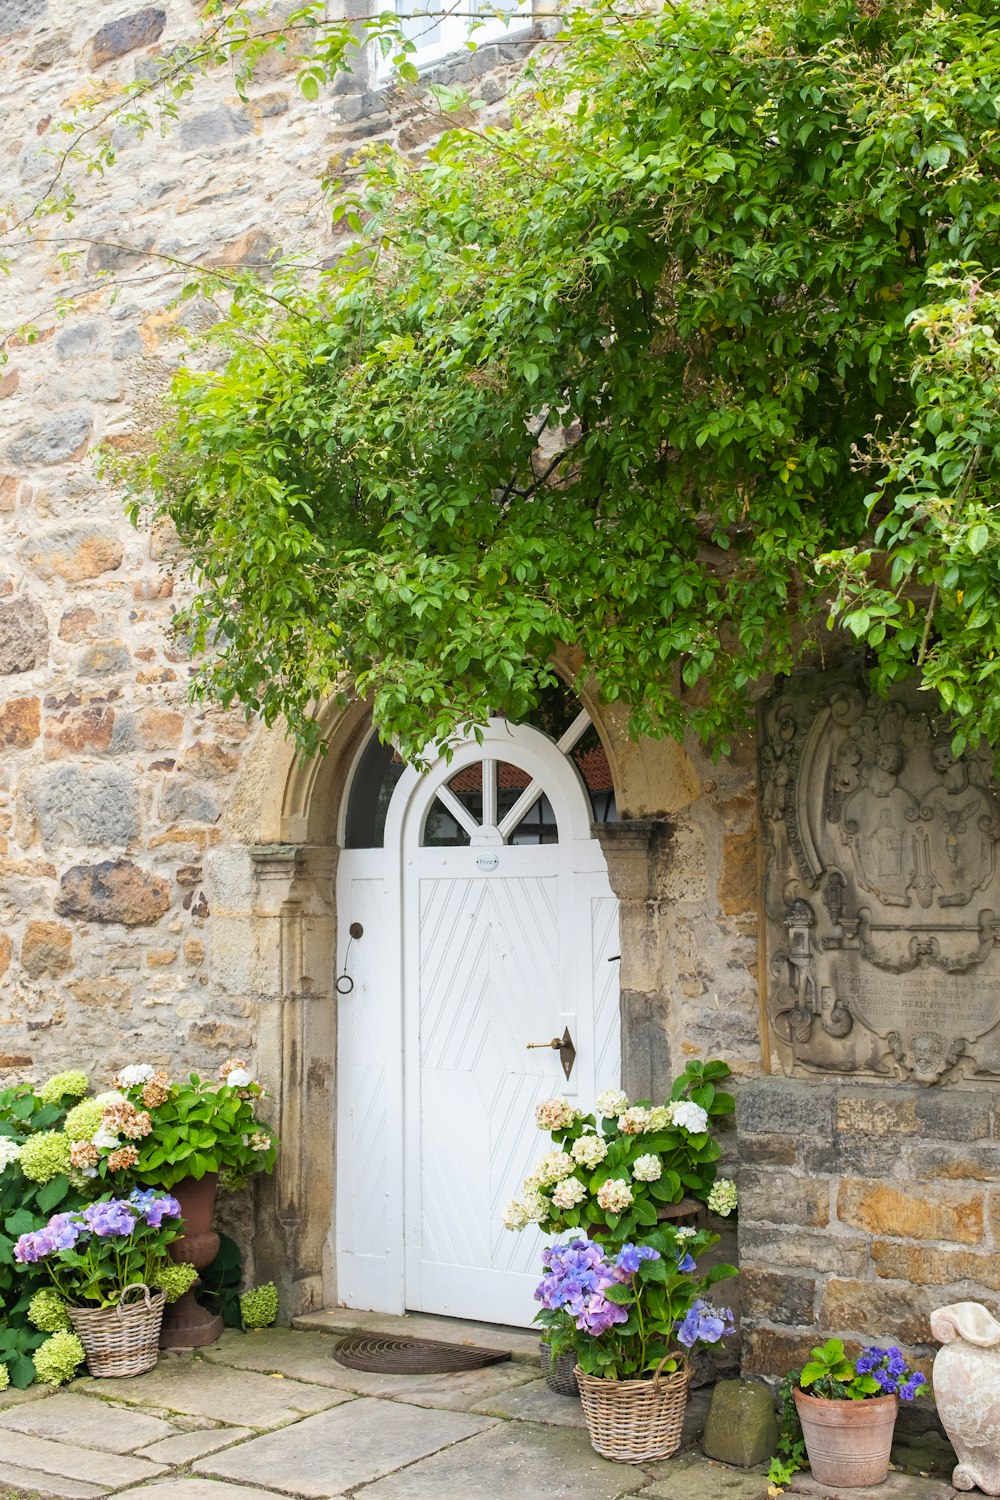 Una puerta blanca rodeada de plantas en macetas